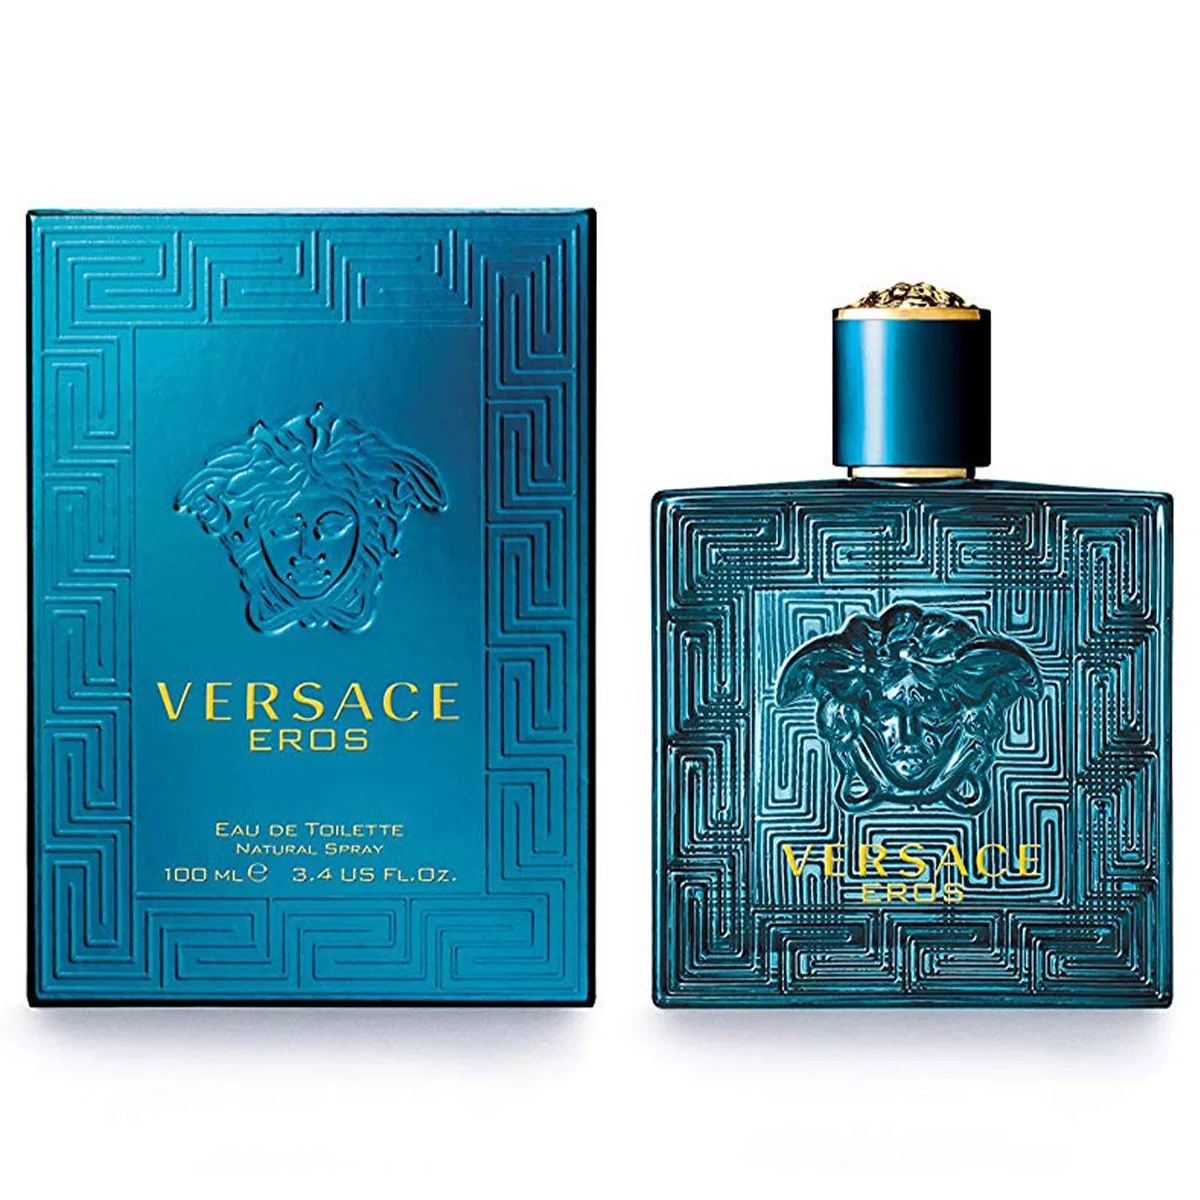 Versace Eros - Mùi hương cho người đàn ông quyến rũ